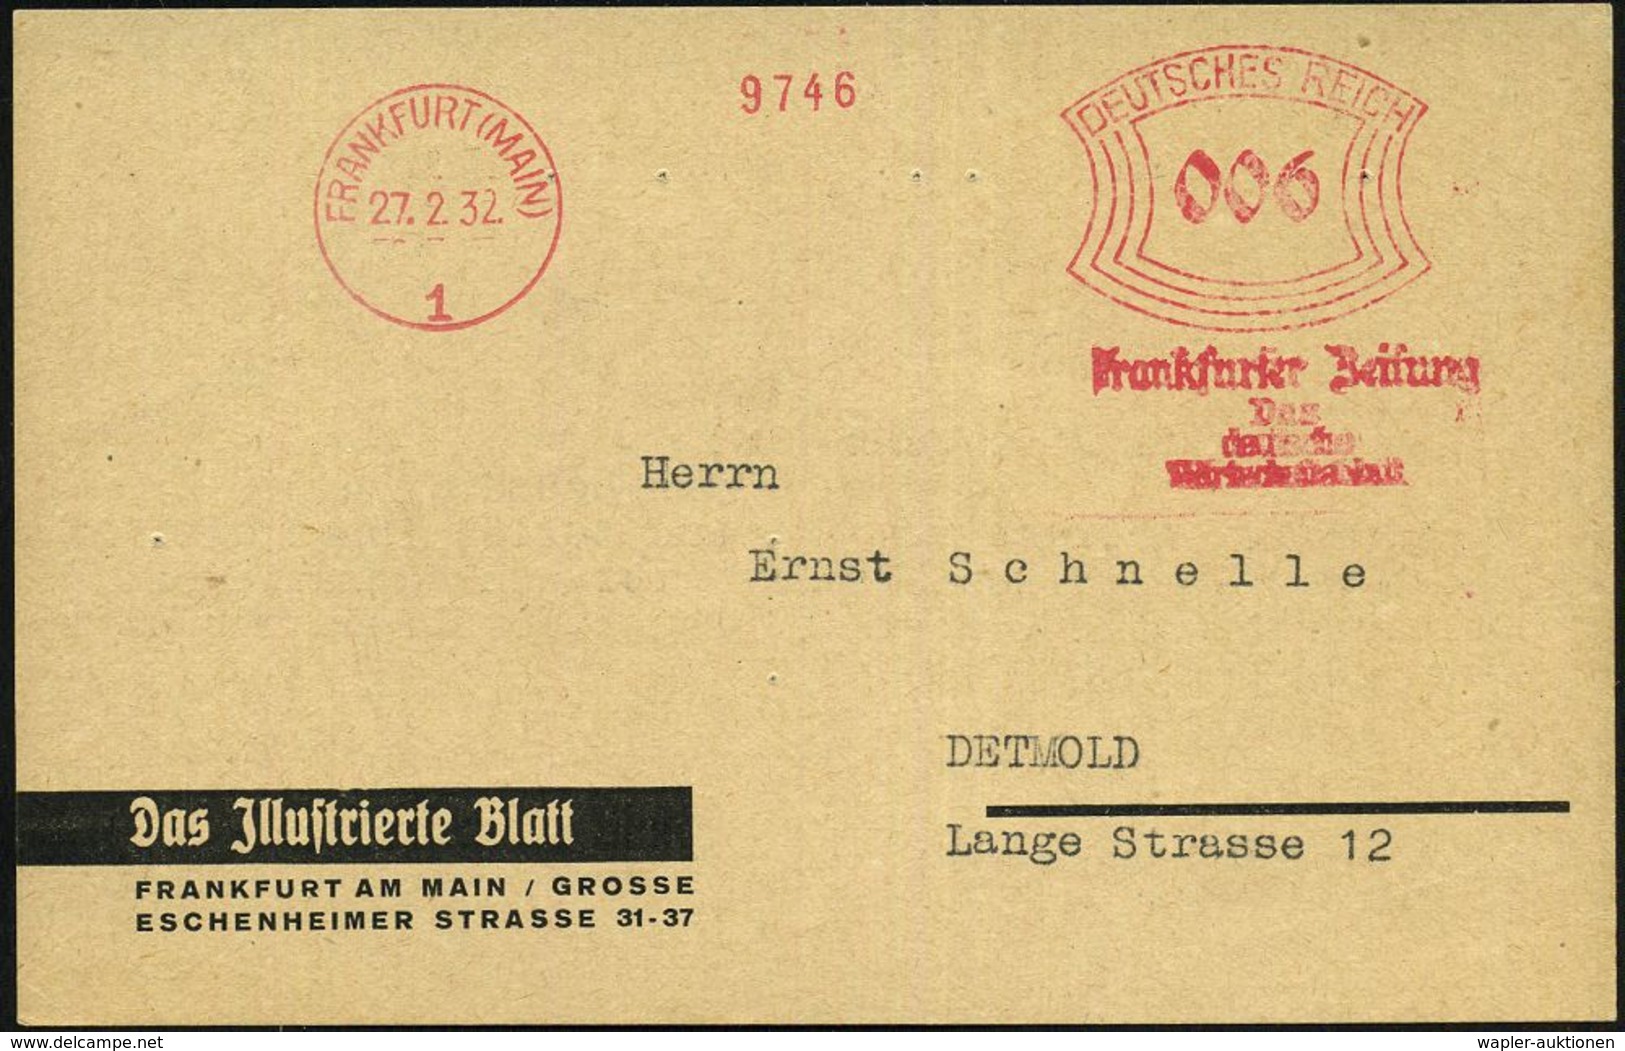 FRANKFURT (MAIN)/ 1/ Frankfurter Zeitung/ Das/ Deutsche/ Wirtschaftsblatt 1932 (27.2.) AFS (abgenutzte Maschine) Auf Fir - Non Classificati